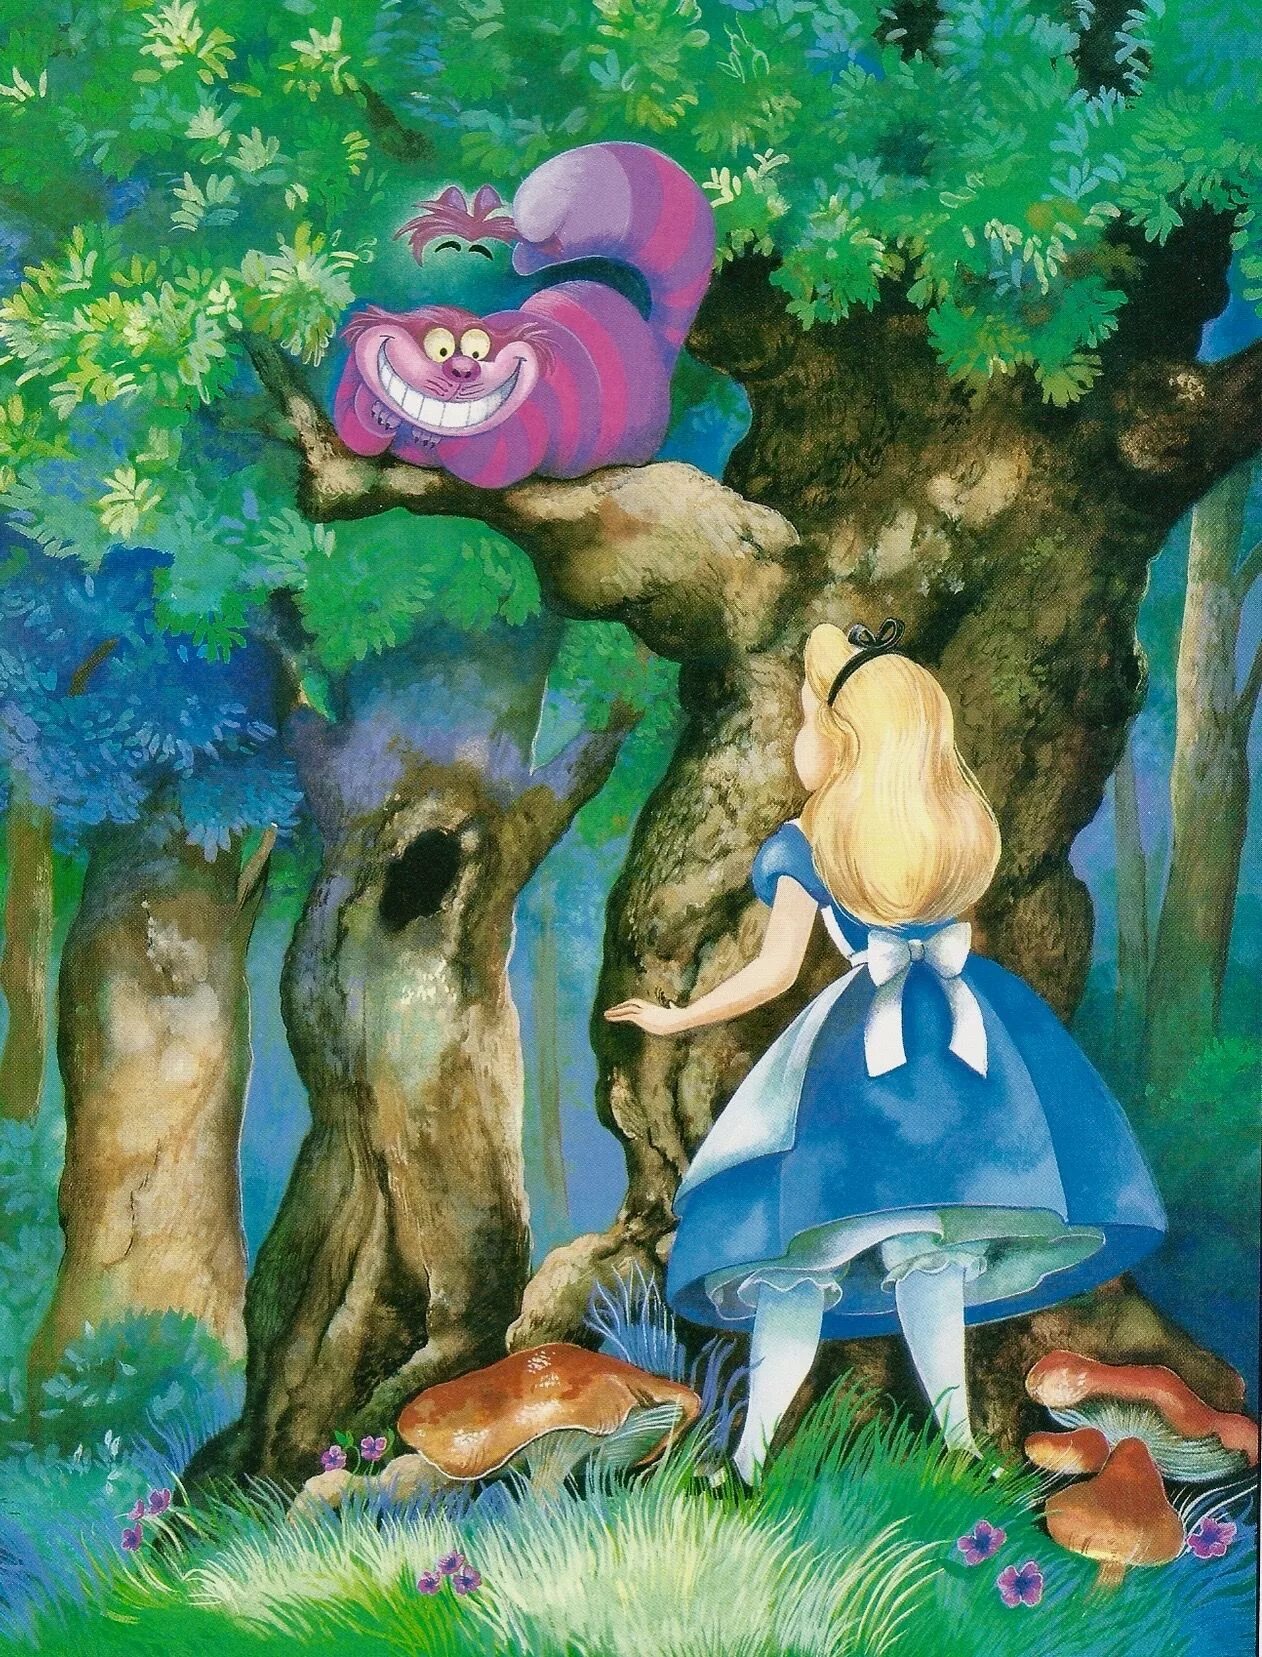 Алиса в стране чудес 1 сказка. Алиса в стране чудес сказка. Иллюстрация из сказки Алиса в стране чудес. Алиса в сказке Алиса в стране чудес. Алиса в стране чудес иллюстрации Дисней.